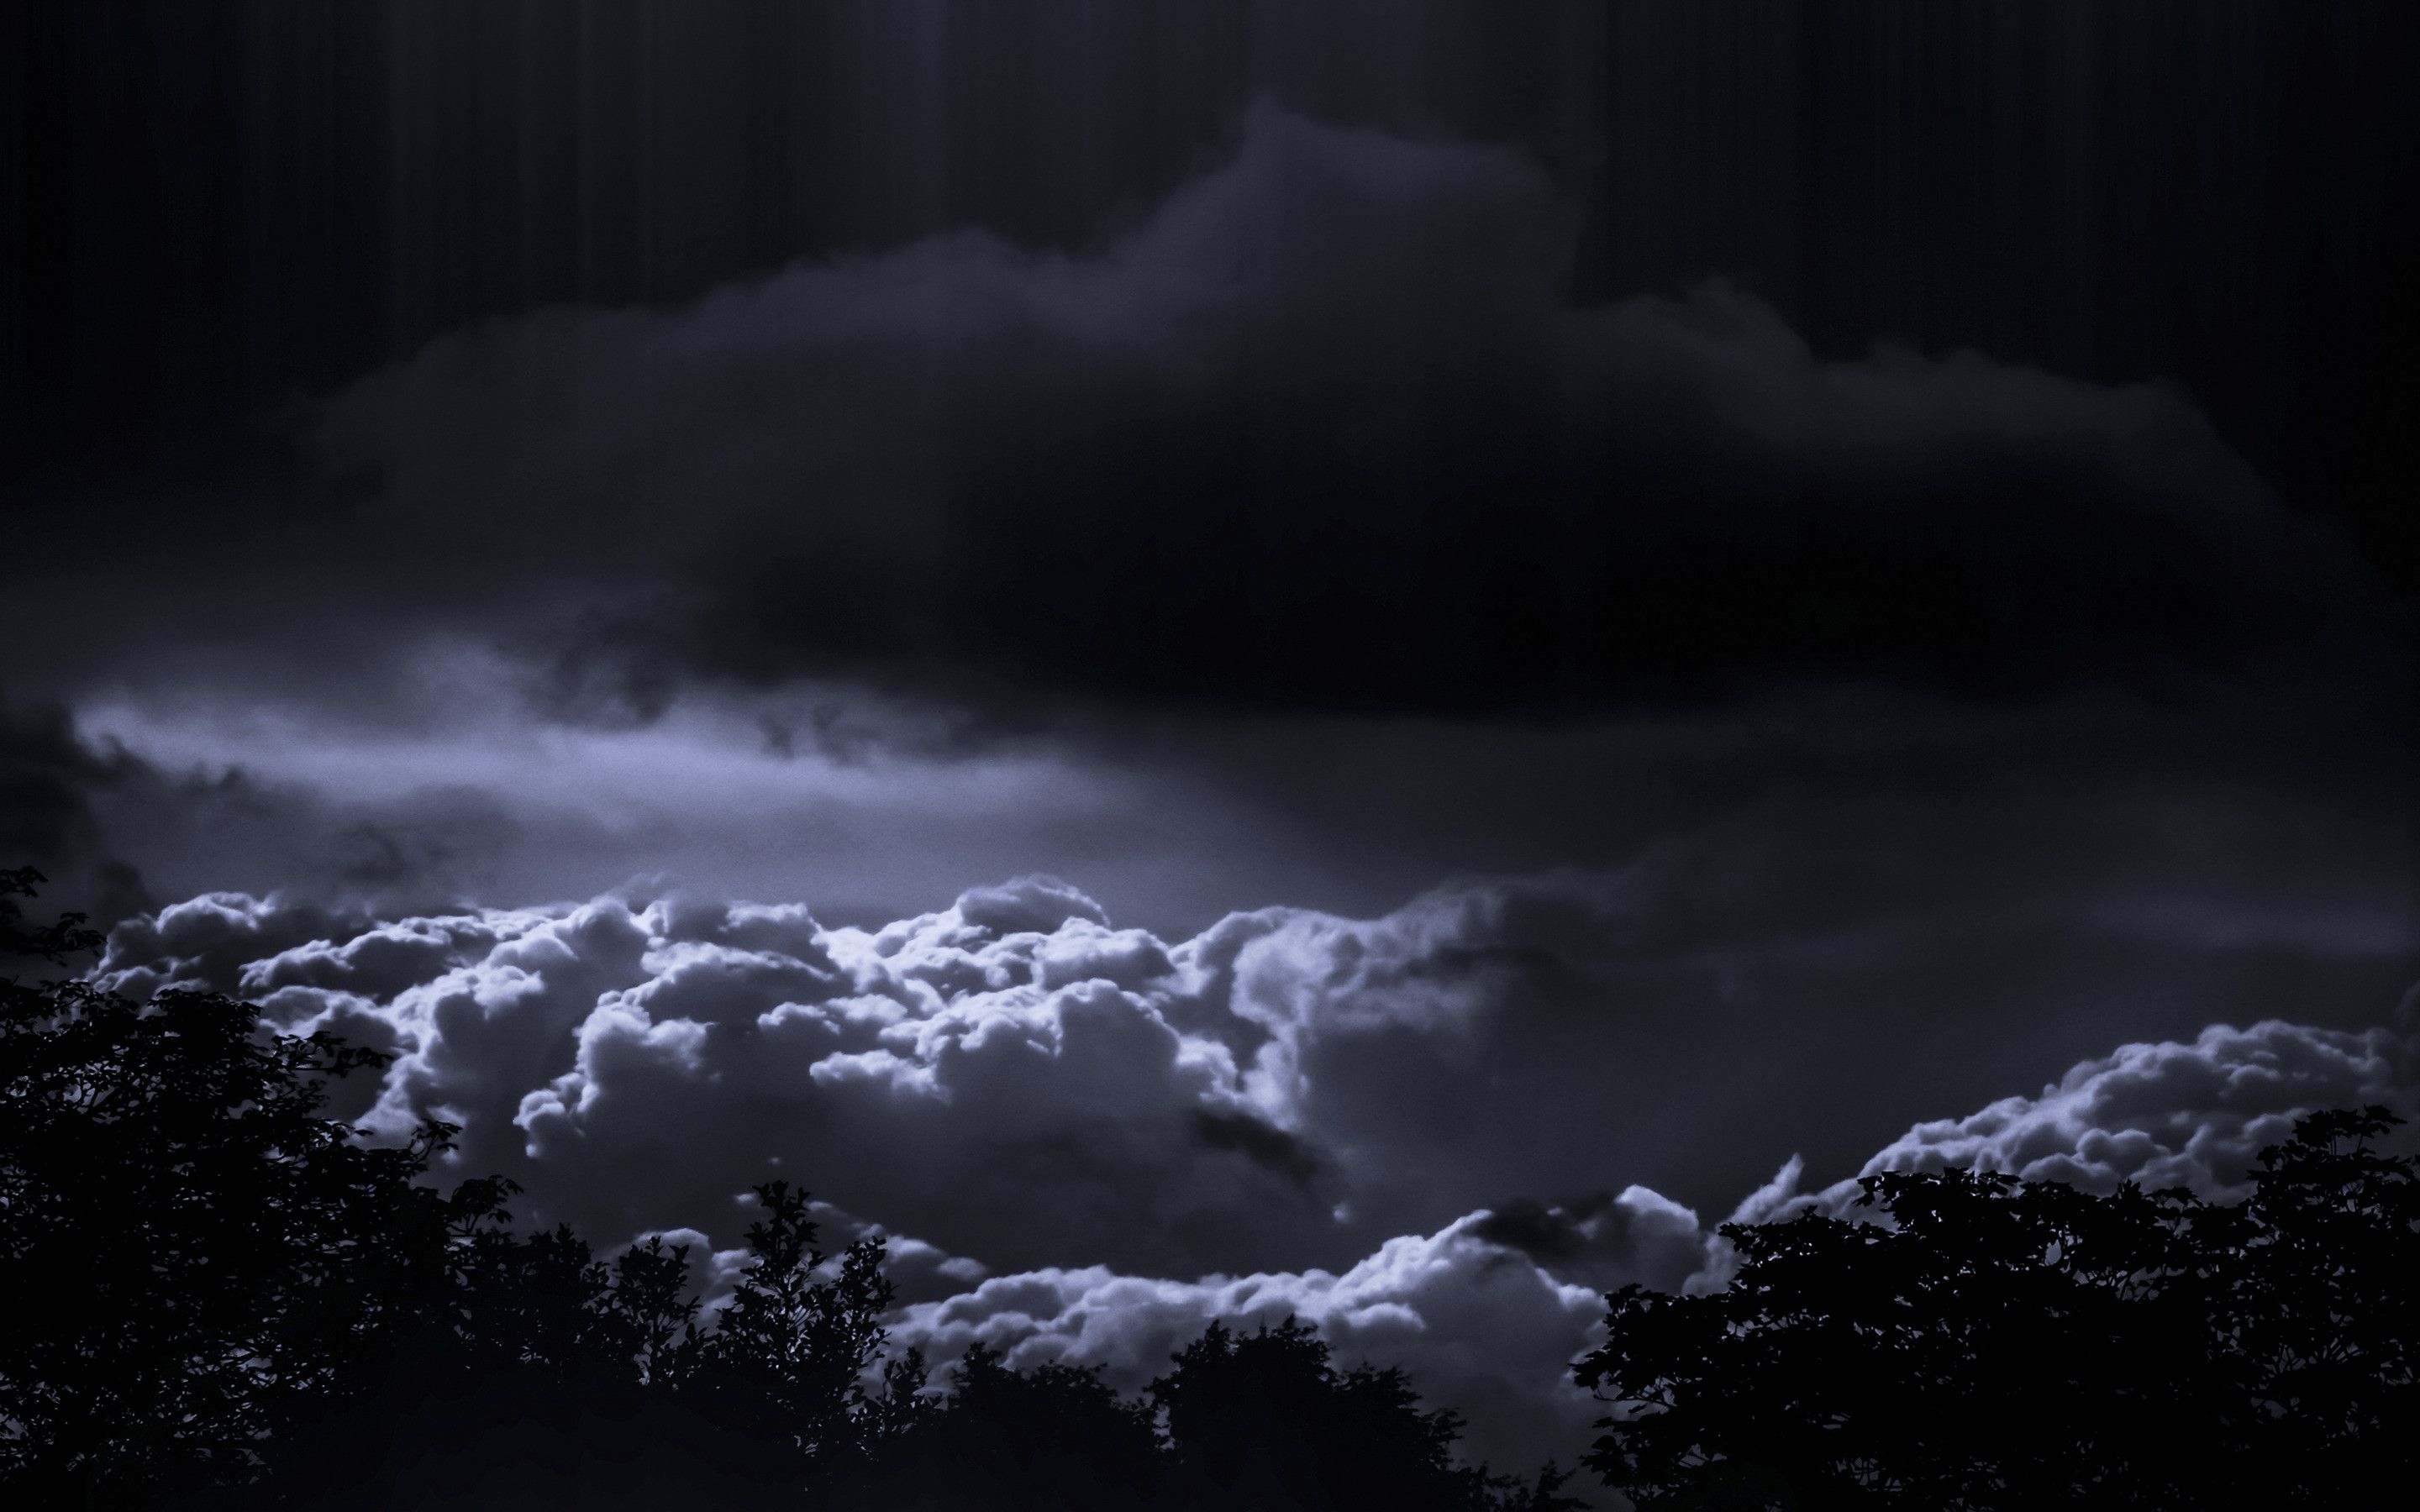 Dark Storm Clouds Desktop Wallpapers 4k Hd Dark Storm Clouds Desktop Backgrounds On Wallpaperbat